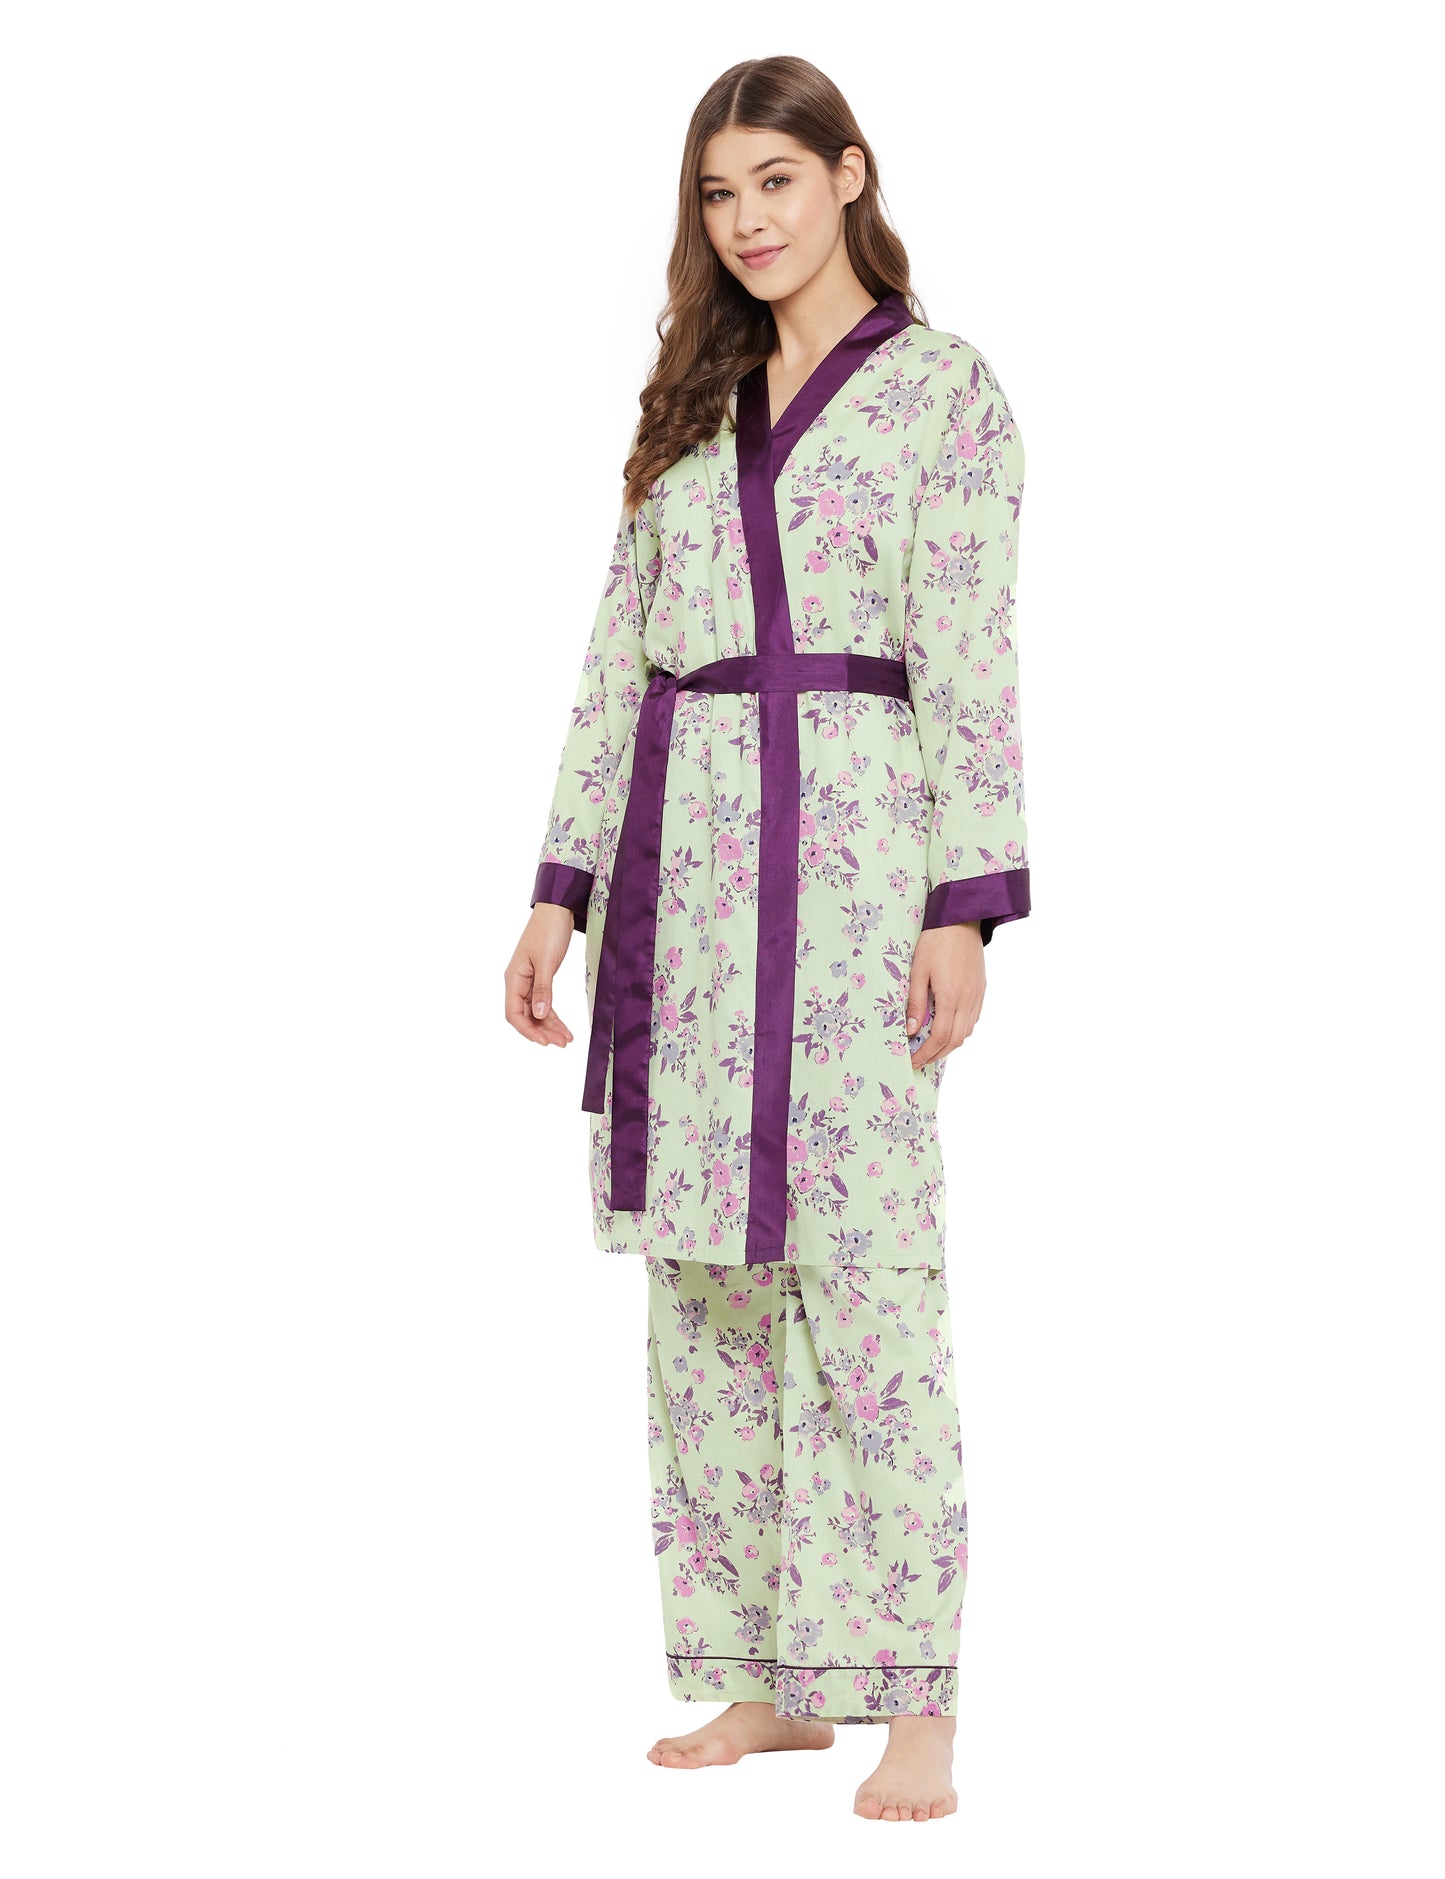 Conjunto de 3 pijamas con estampado de bata de satén de algodón